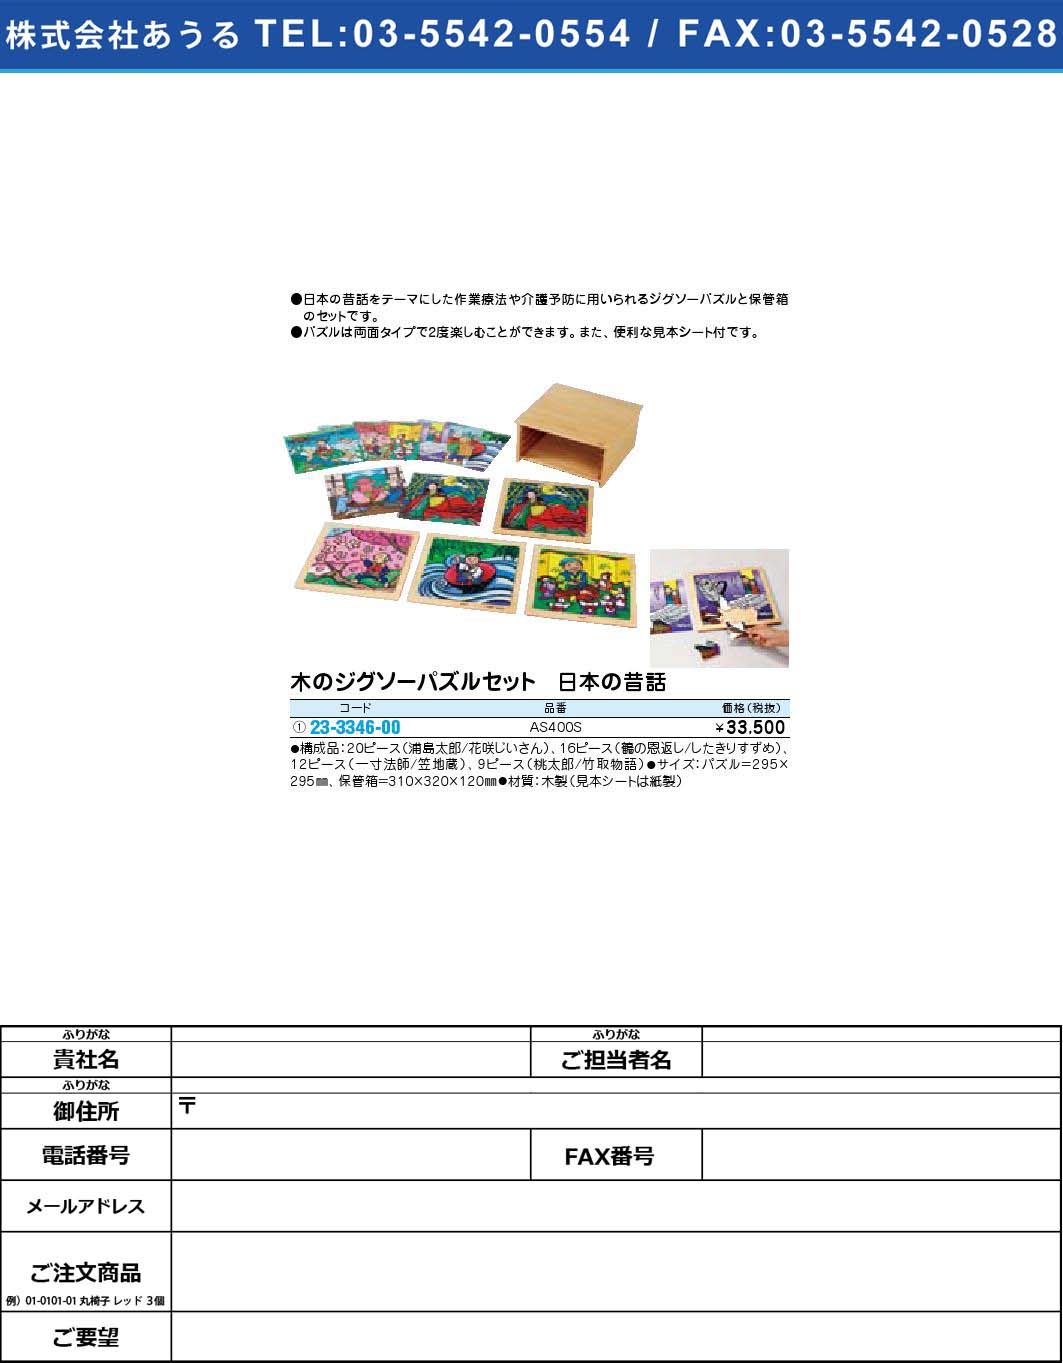 木のジグソーパズルセット 日本の昔話 AS400S(23-3346-00)【1個単位】